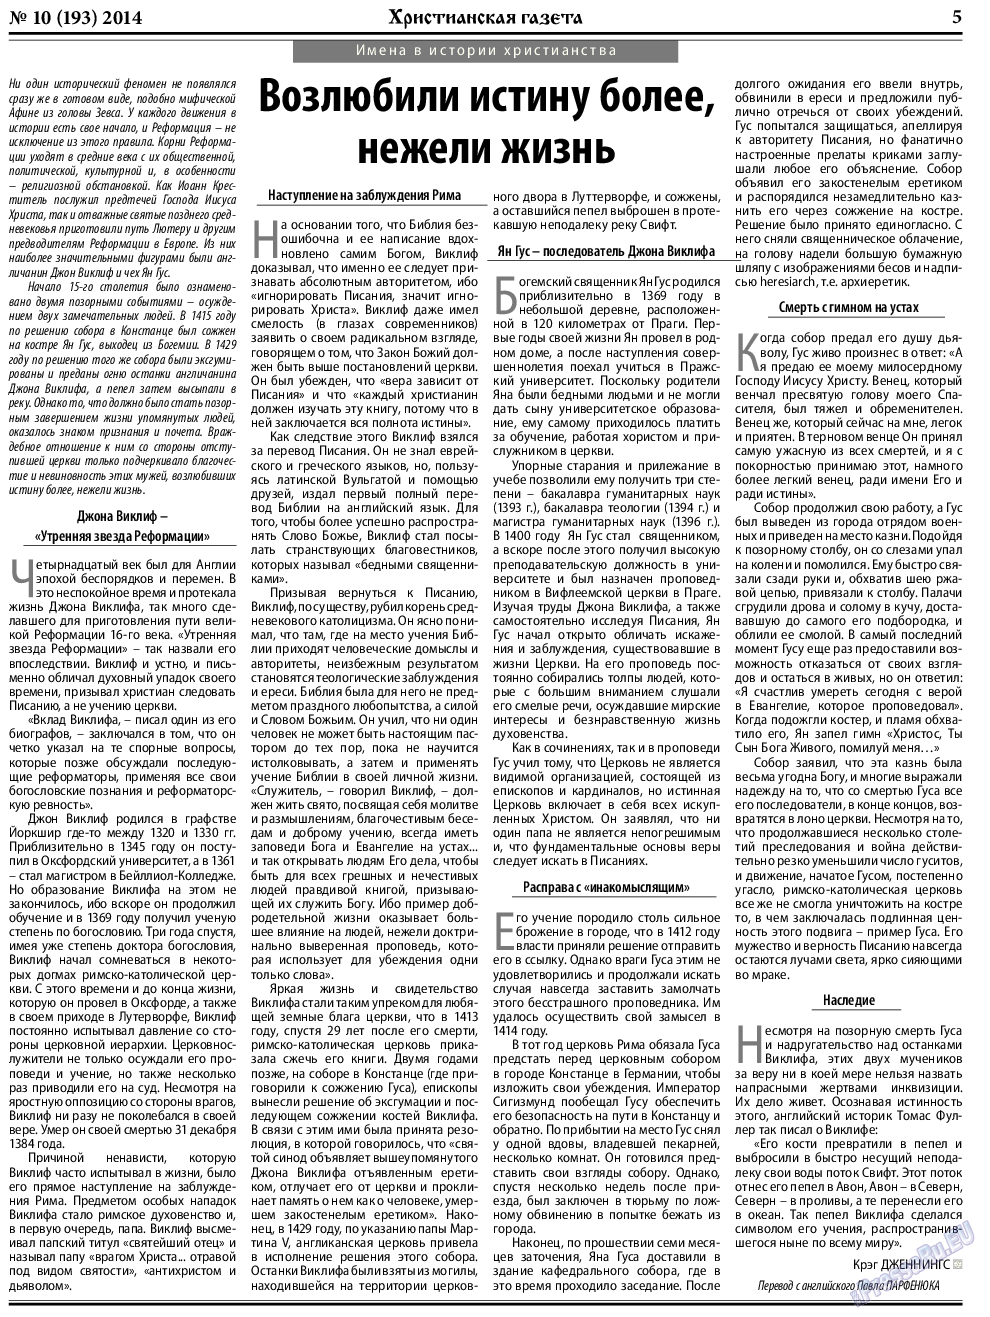 Христианская газета, газета. 2014 №10 стр.5